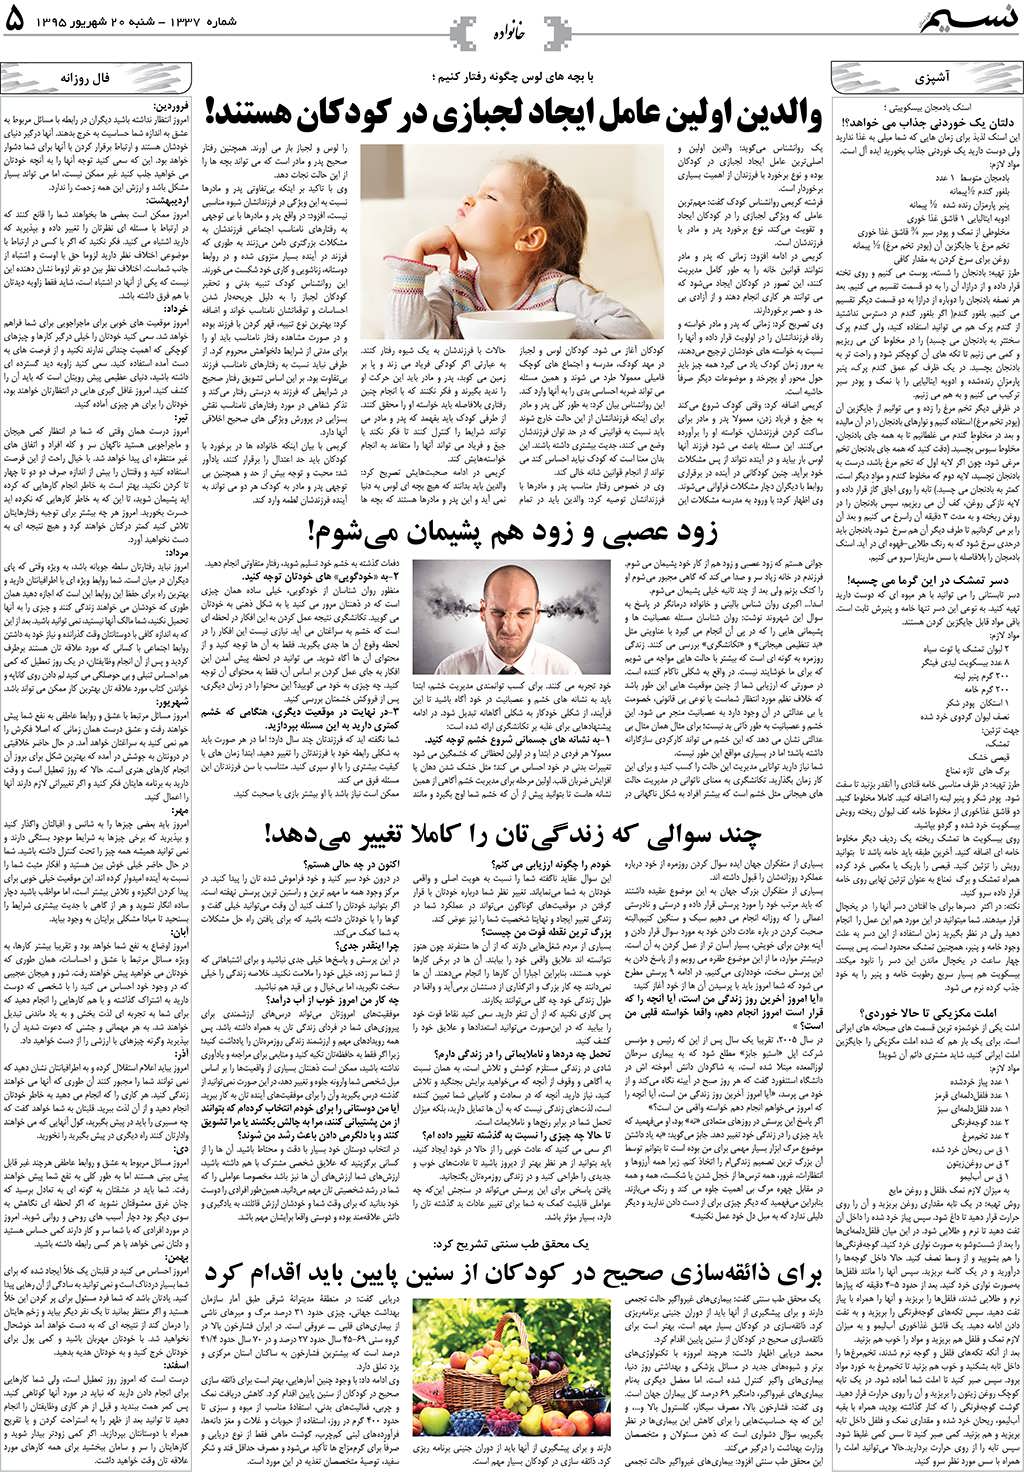 صفحه خانواده روزنامه نسیم شماره 1337